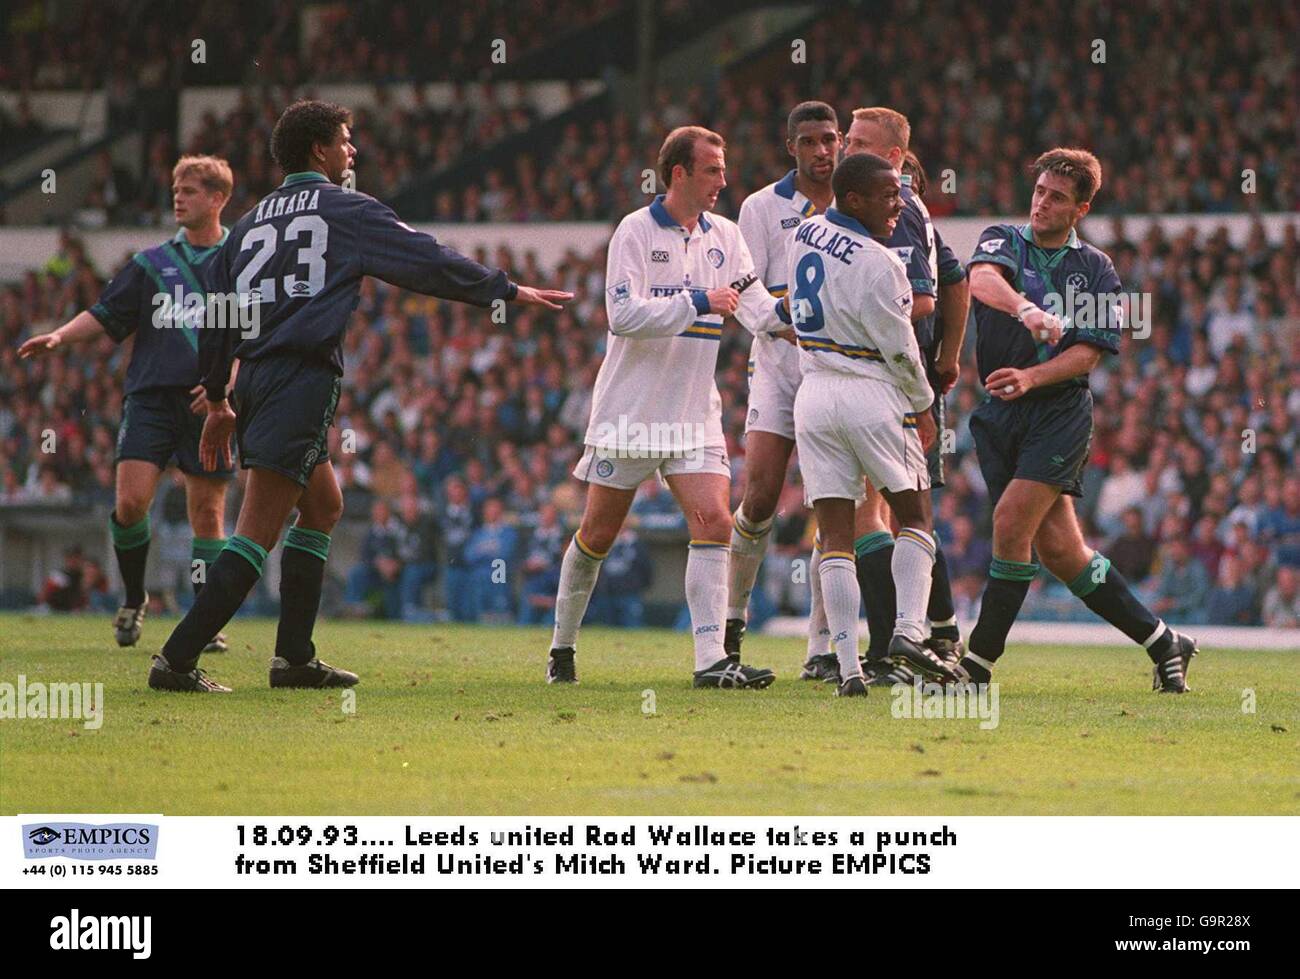 18.09.93. Leeds united Rod Wallace prende un pugno dalla Mitch Ward di Sheffield United. Immagine EMPICS Foto Stock